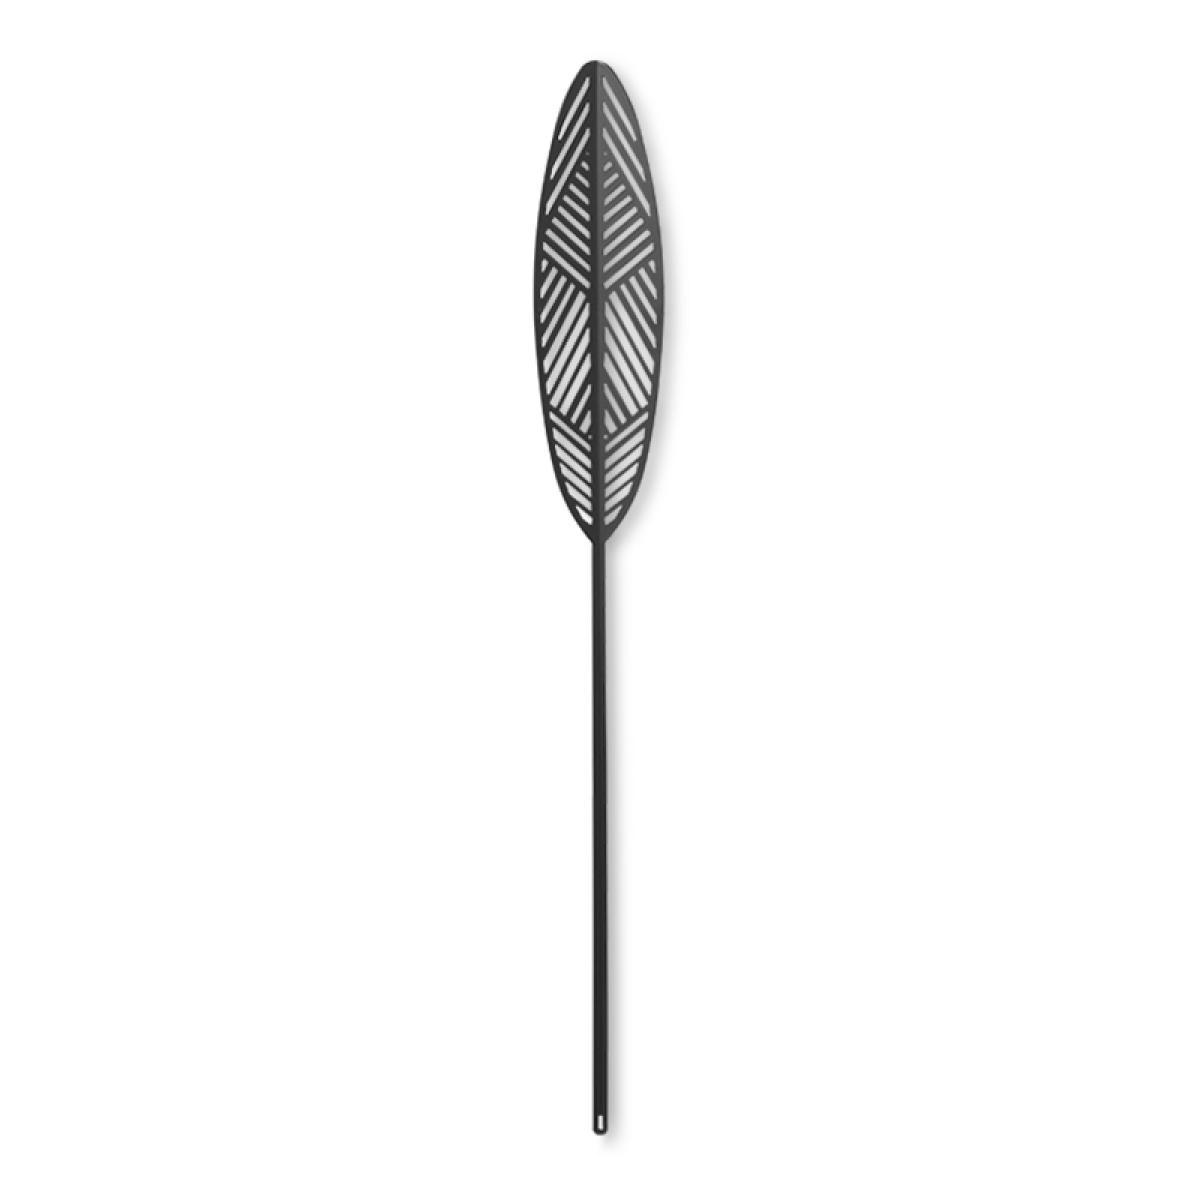 Lucie Kaas Leaflike metalen plaat Silva Black, 41 cm